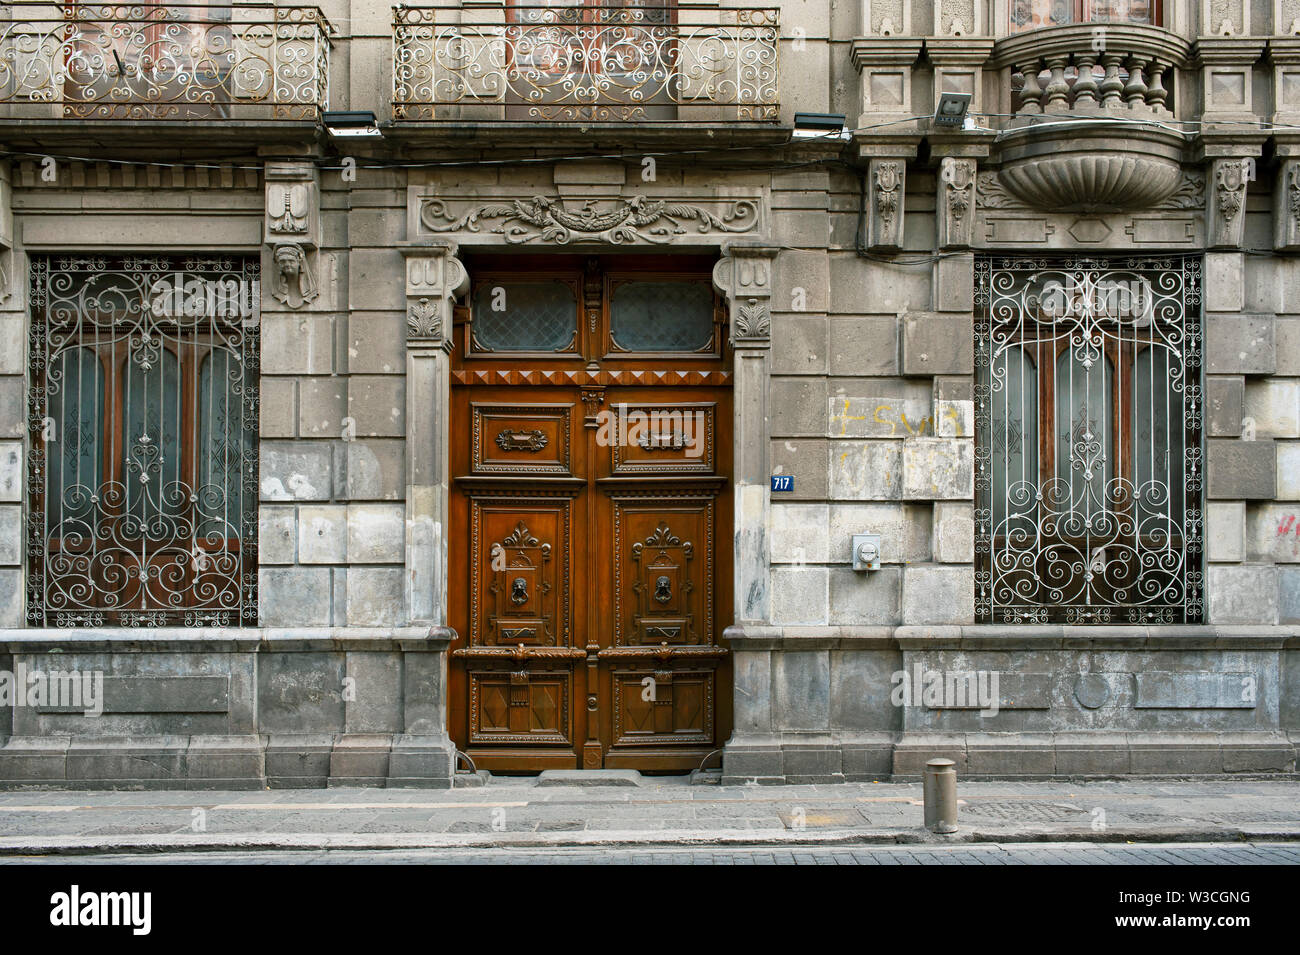 La façade de l'immeuble avec des détails de la période coloniale espagnole et porte sculptée au centre-ville de Puebla, UNESCO World Heritage site. Puebla de Zaragoza, Mexique. Jun 2019 Banque D'Images